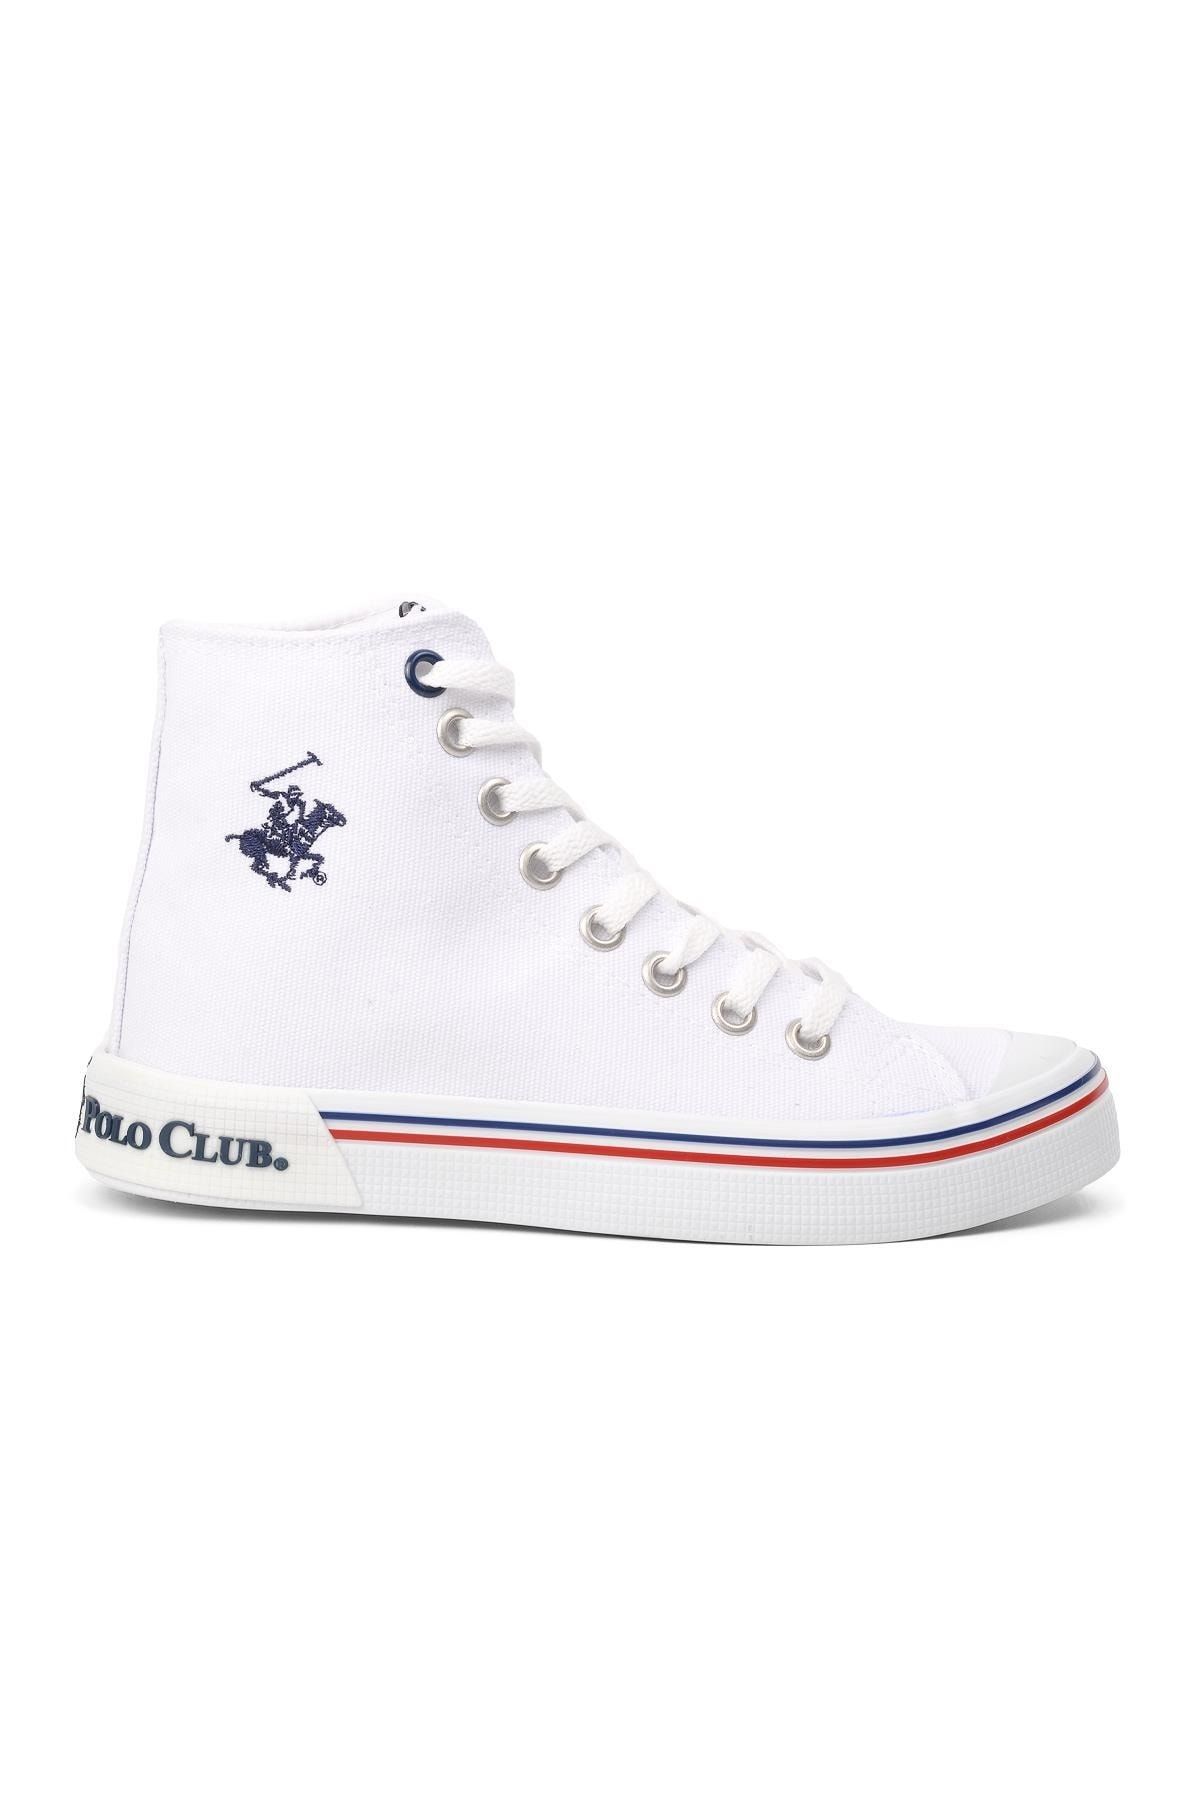 Beverly Hills Polo Club Po-17111 Beyaz Kadın Bilek Boy Sneaker